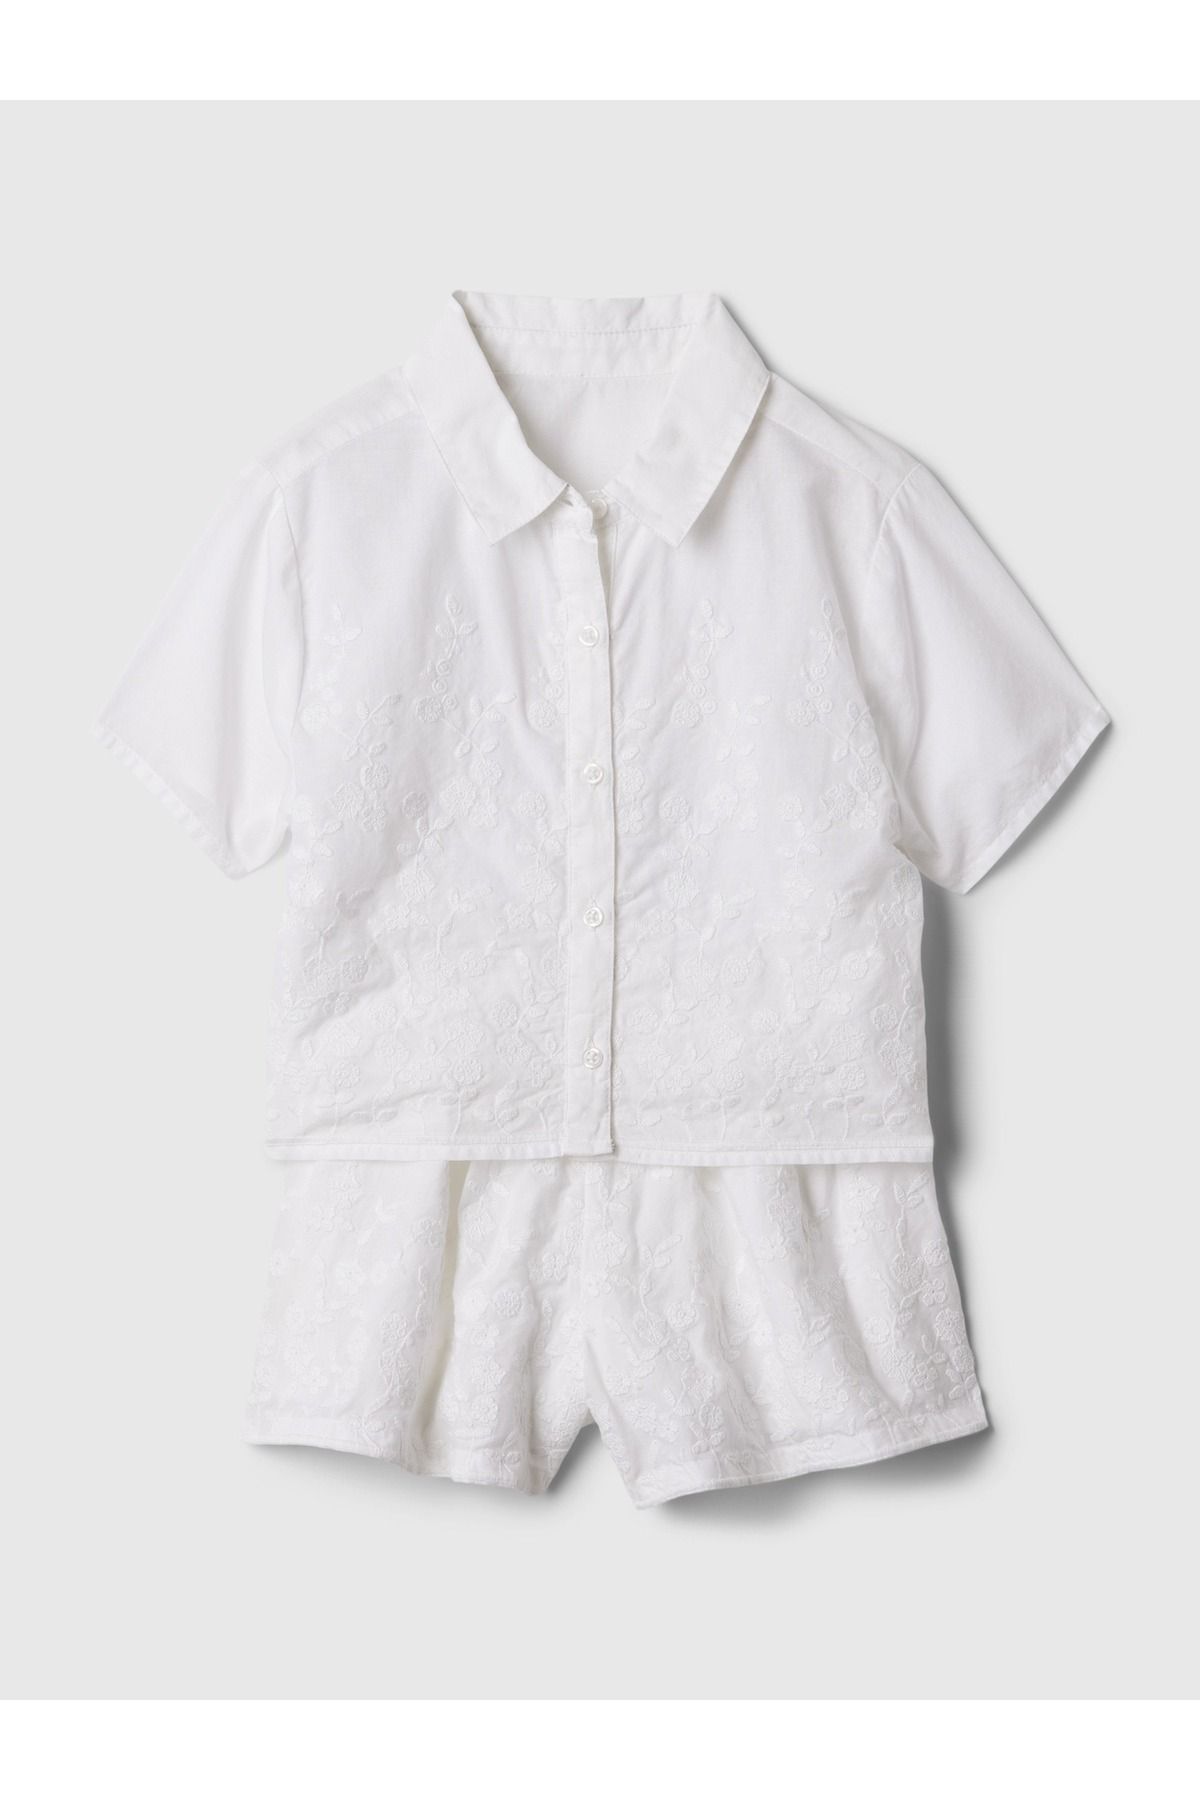 GAP Kız Bebek Beyaz İşlemeli Outfit Set